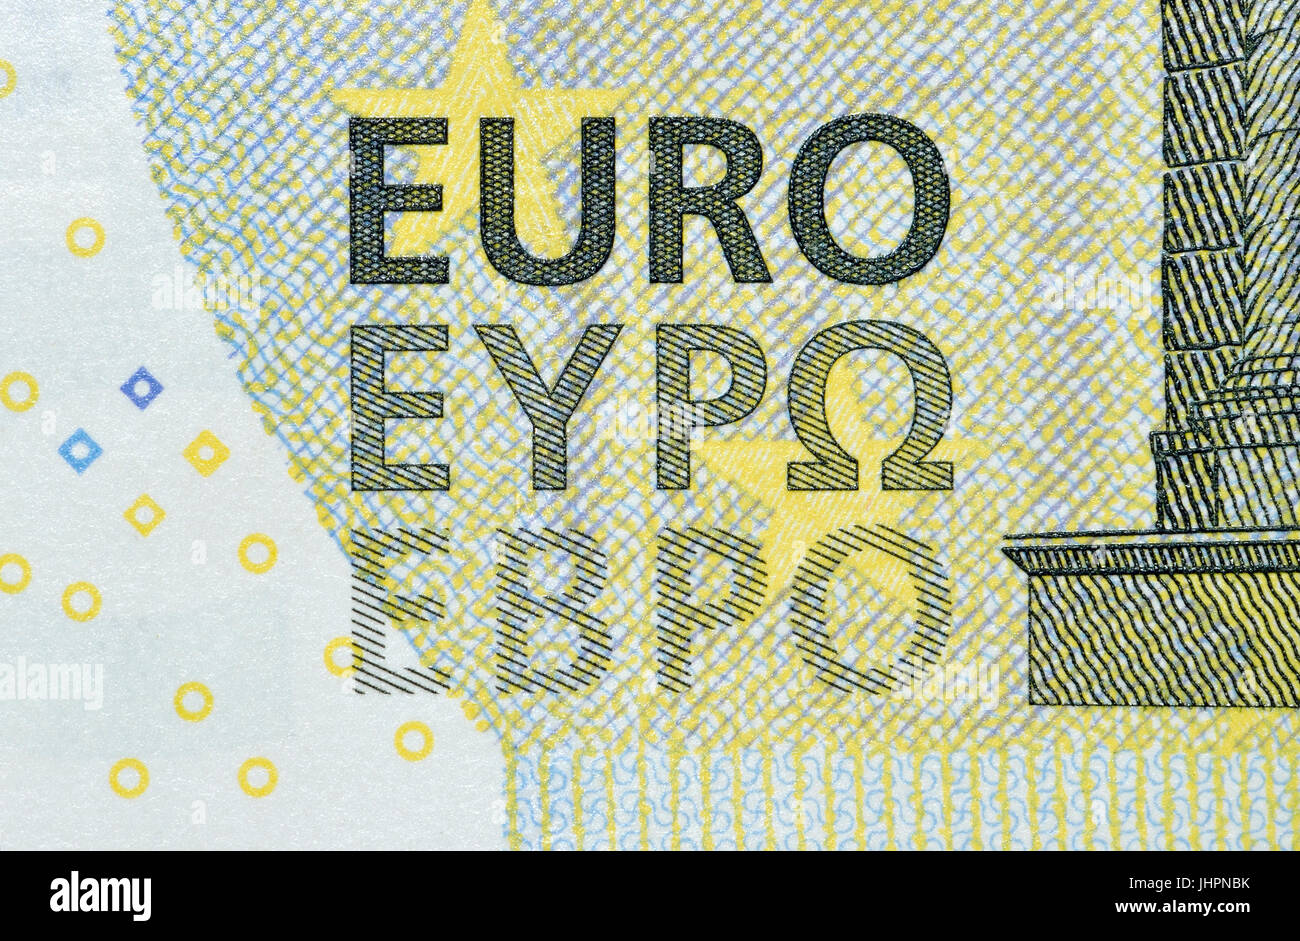 €5 Detalles de billetes que muestra la palabra "euro" en tres alfabetos (latino) - romano, griego y cirílico. Foto de stock